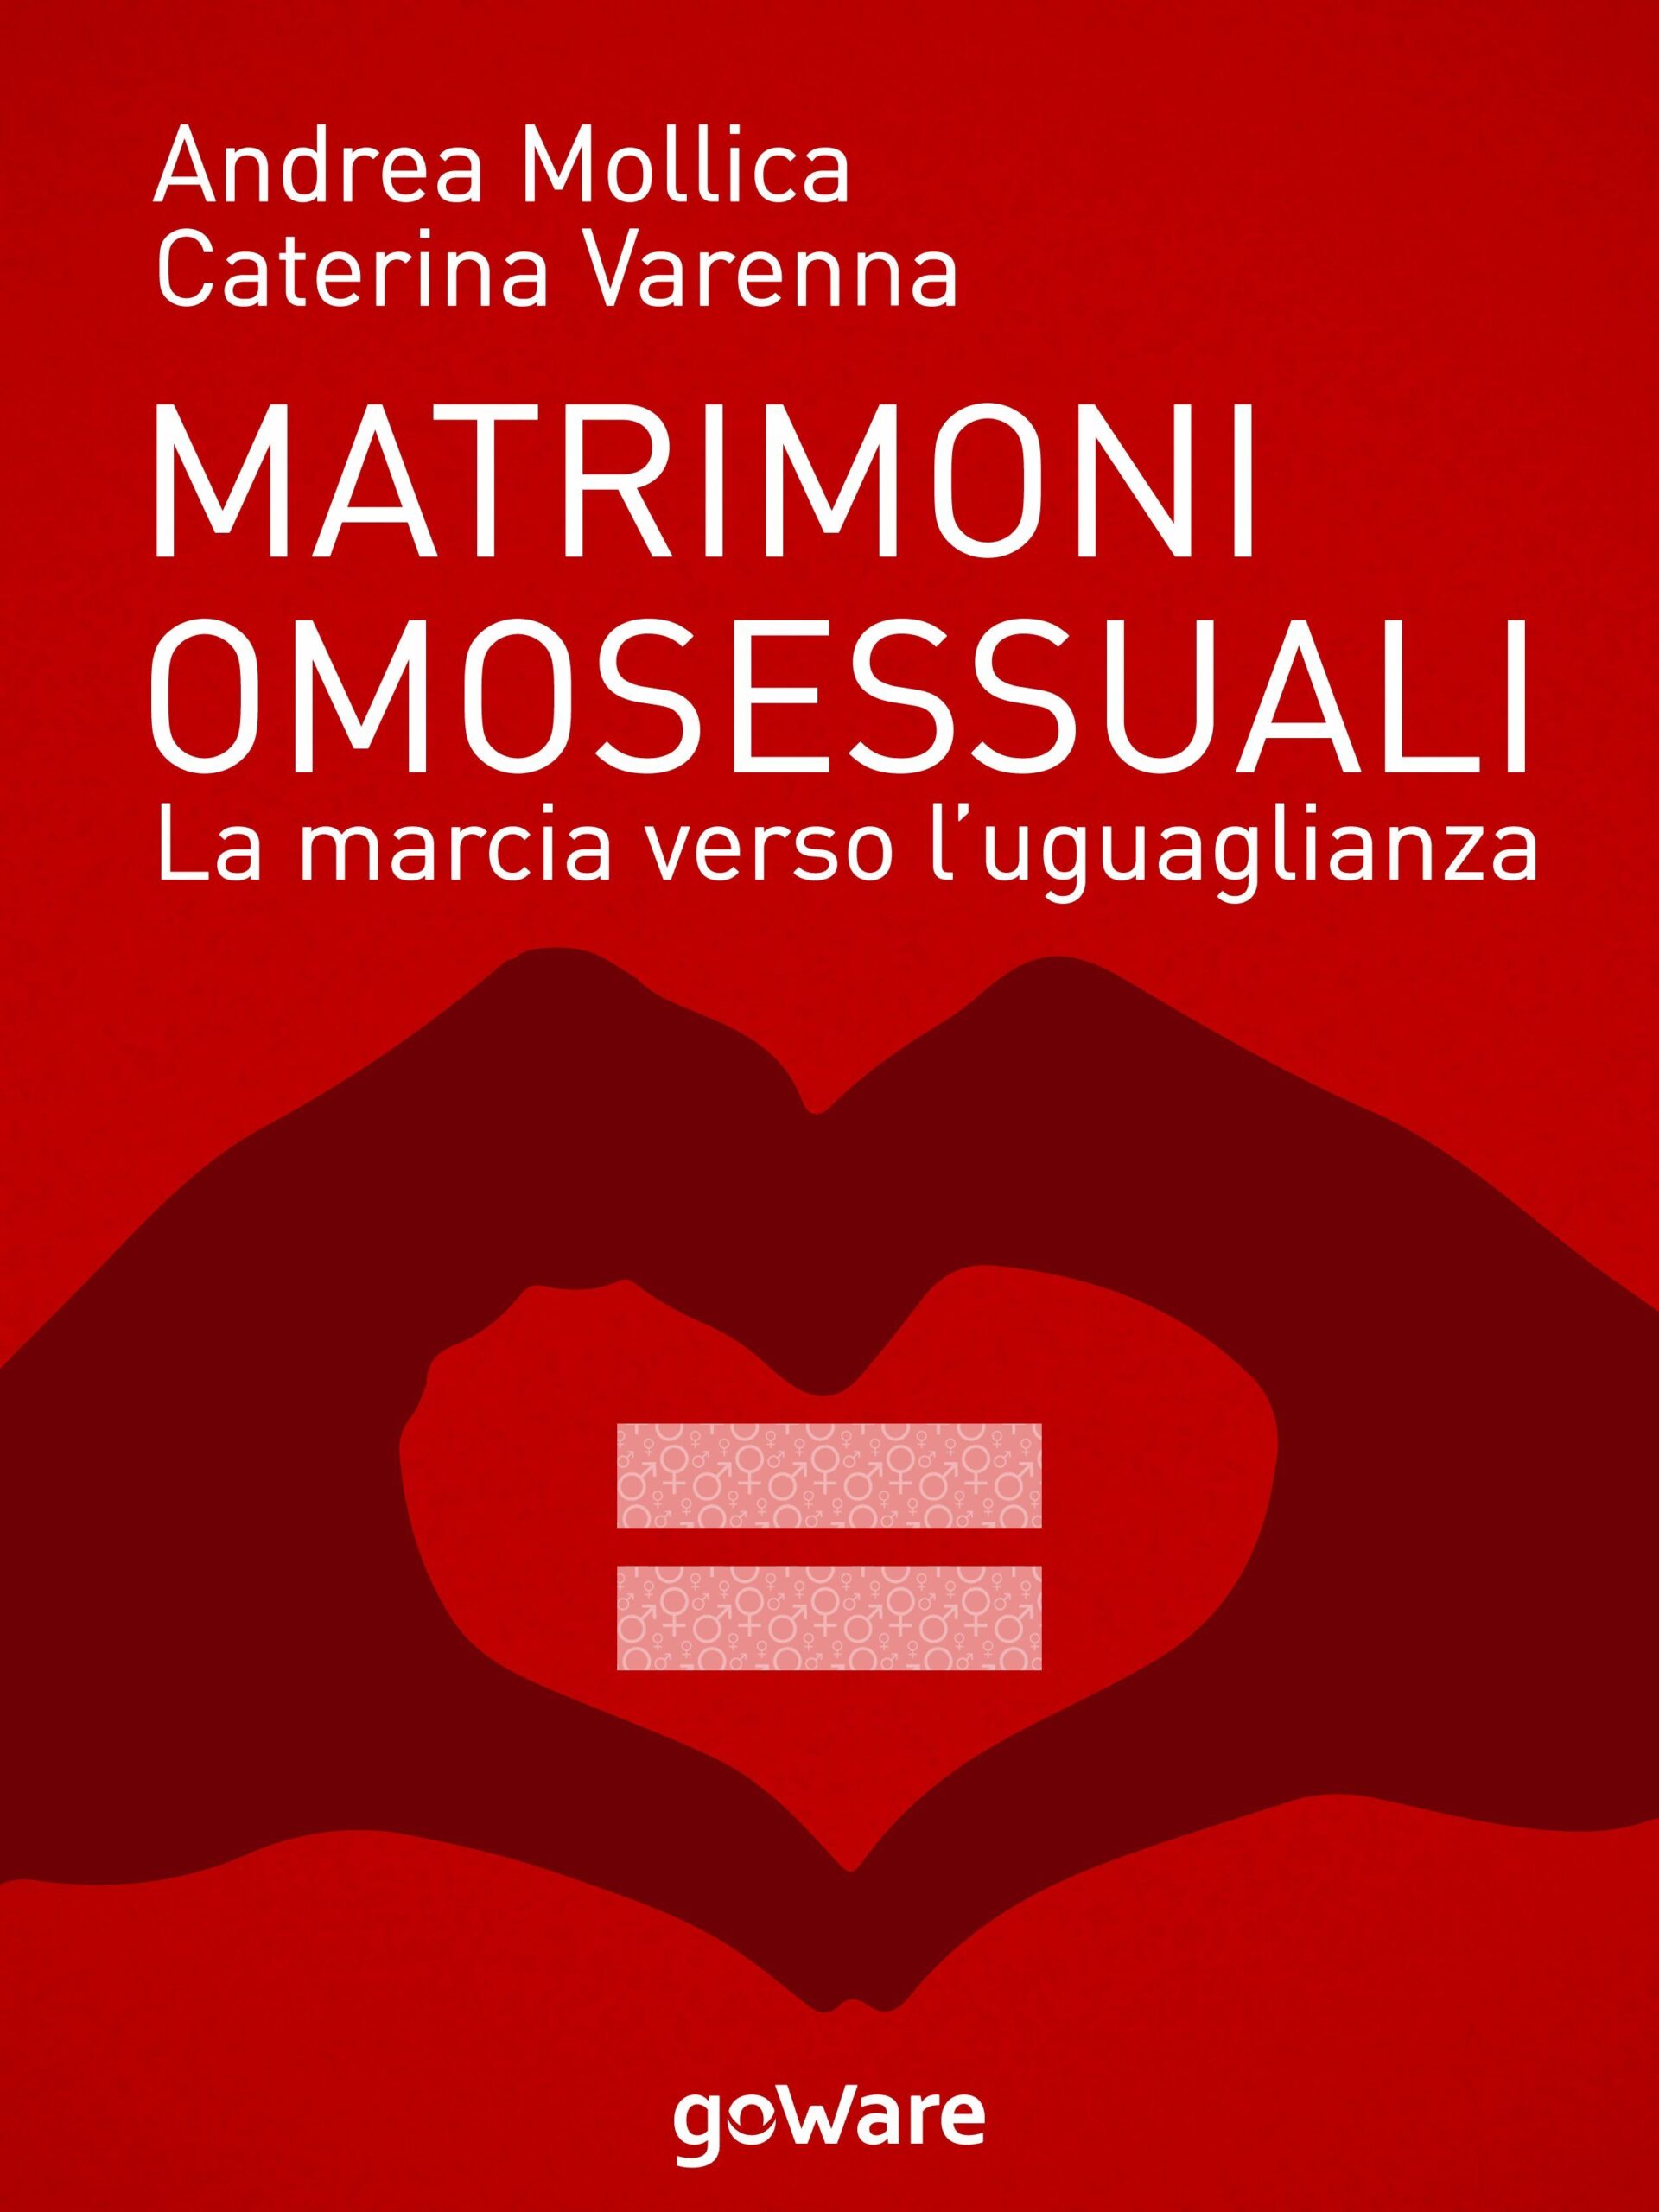 Matrimoni omosessuali: la marcia verso l'uguaglianza